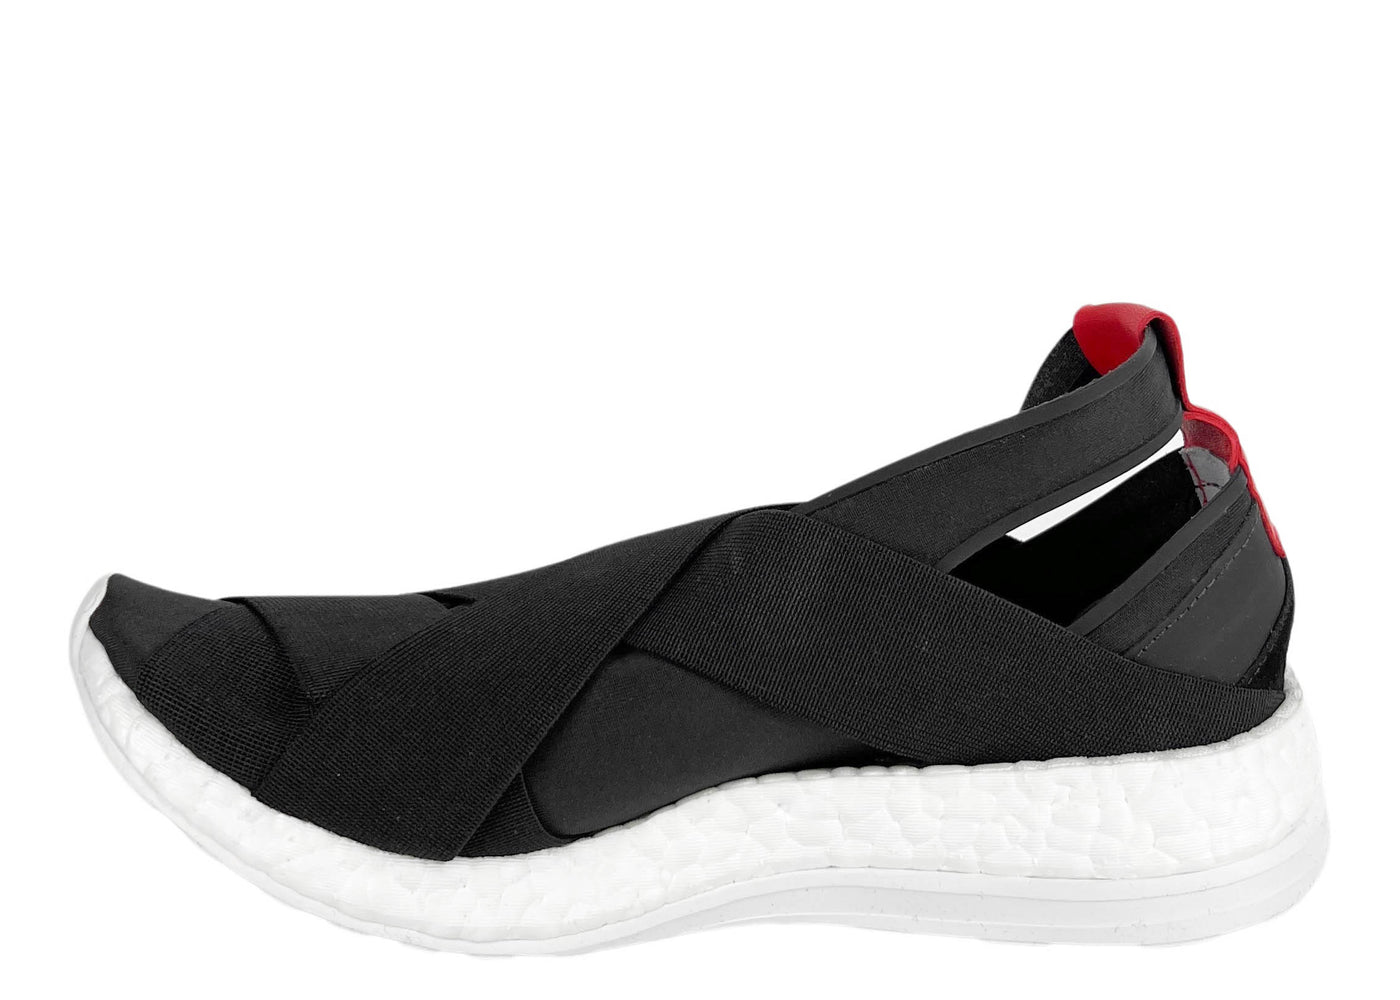 Adidas Y-3 Yohji Yamamoto Dansu Boost Sneakers in Black - Discounts on Yohji Yamamoto at UAL